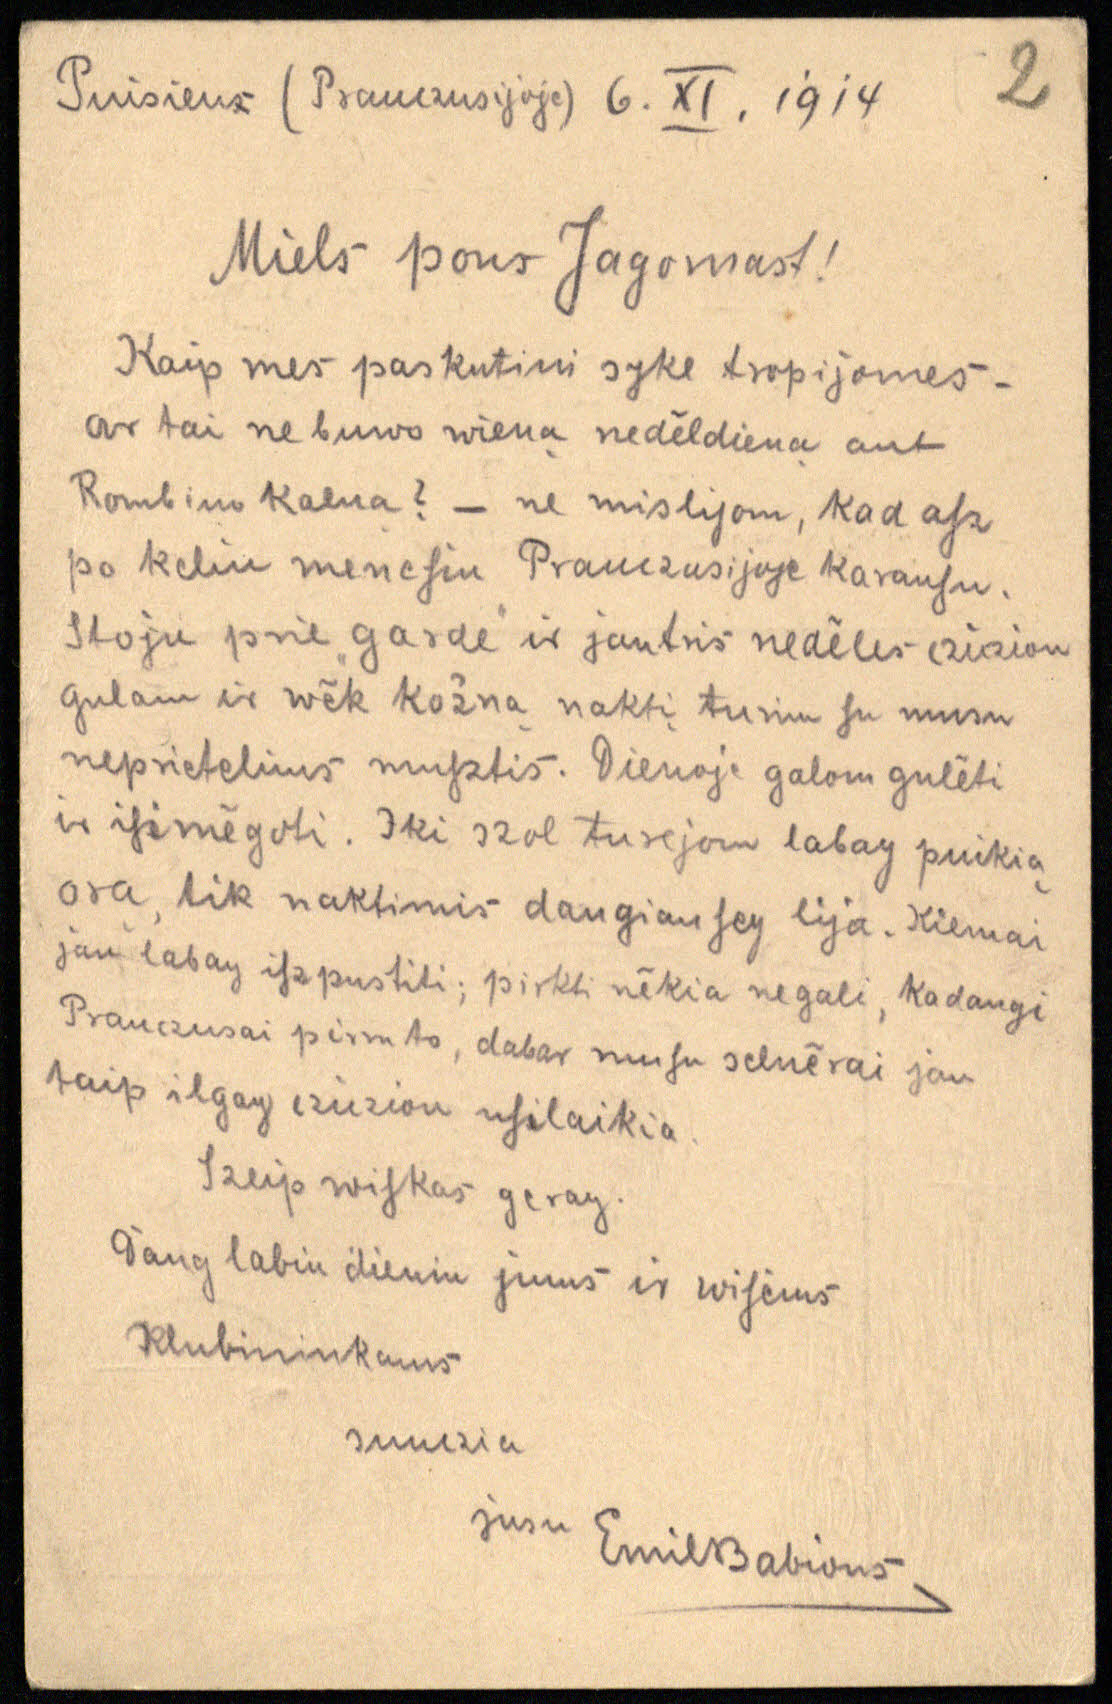 Kareivio Emilio Babiono laiškas Enziui Jagomastui iš Prancūzijos. 1914 11 06